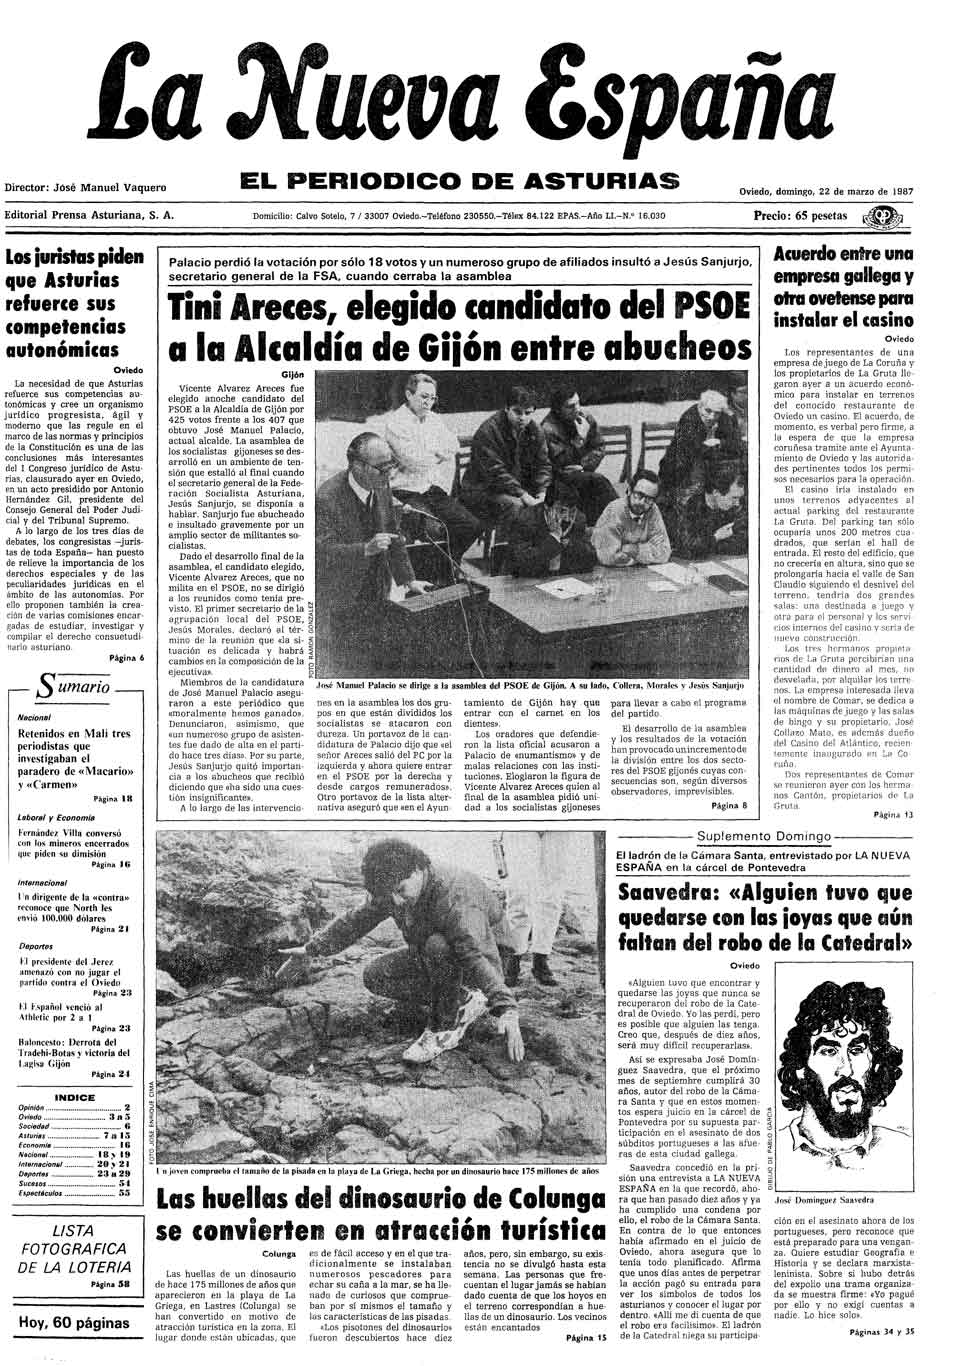 Portada del Domingo, 22 de Marzo de 1987